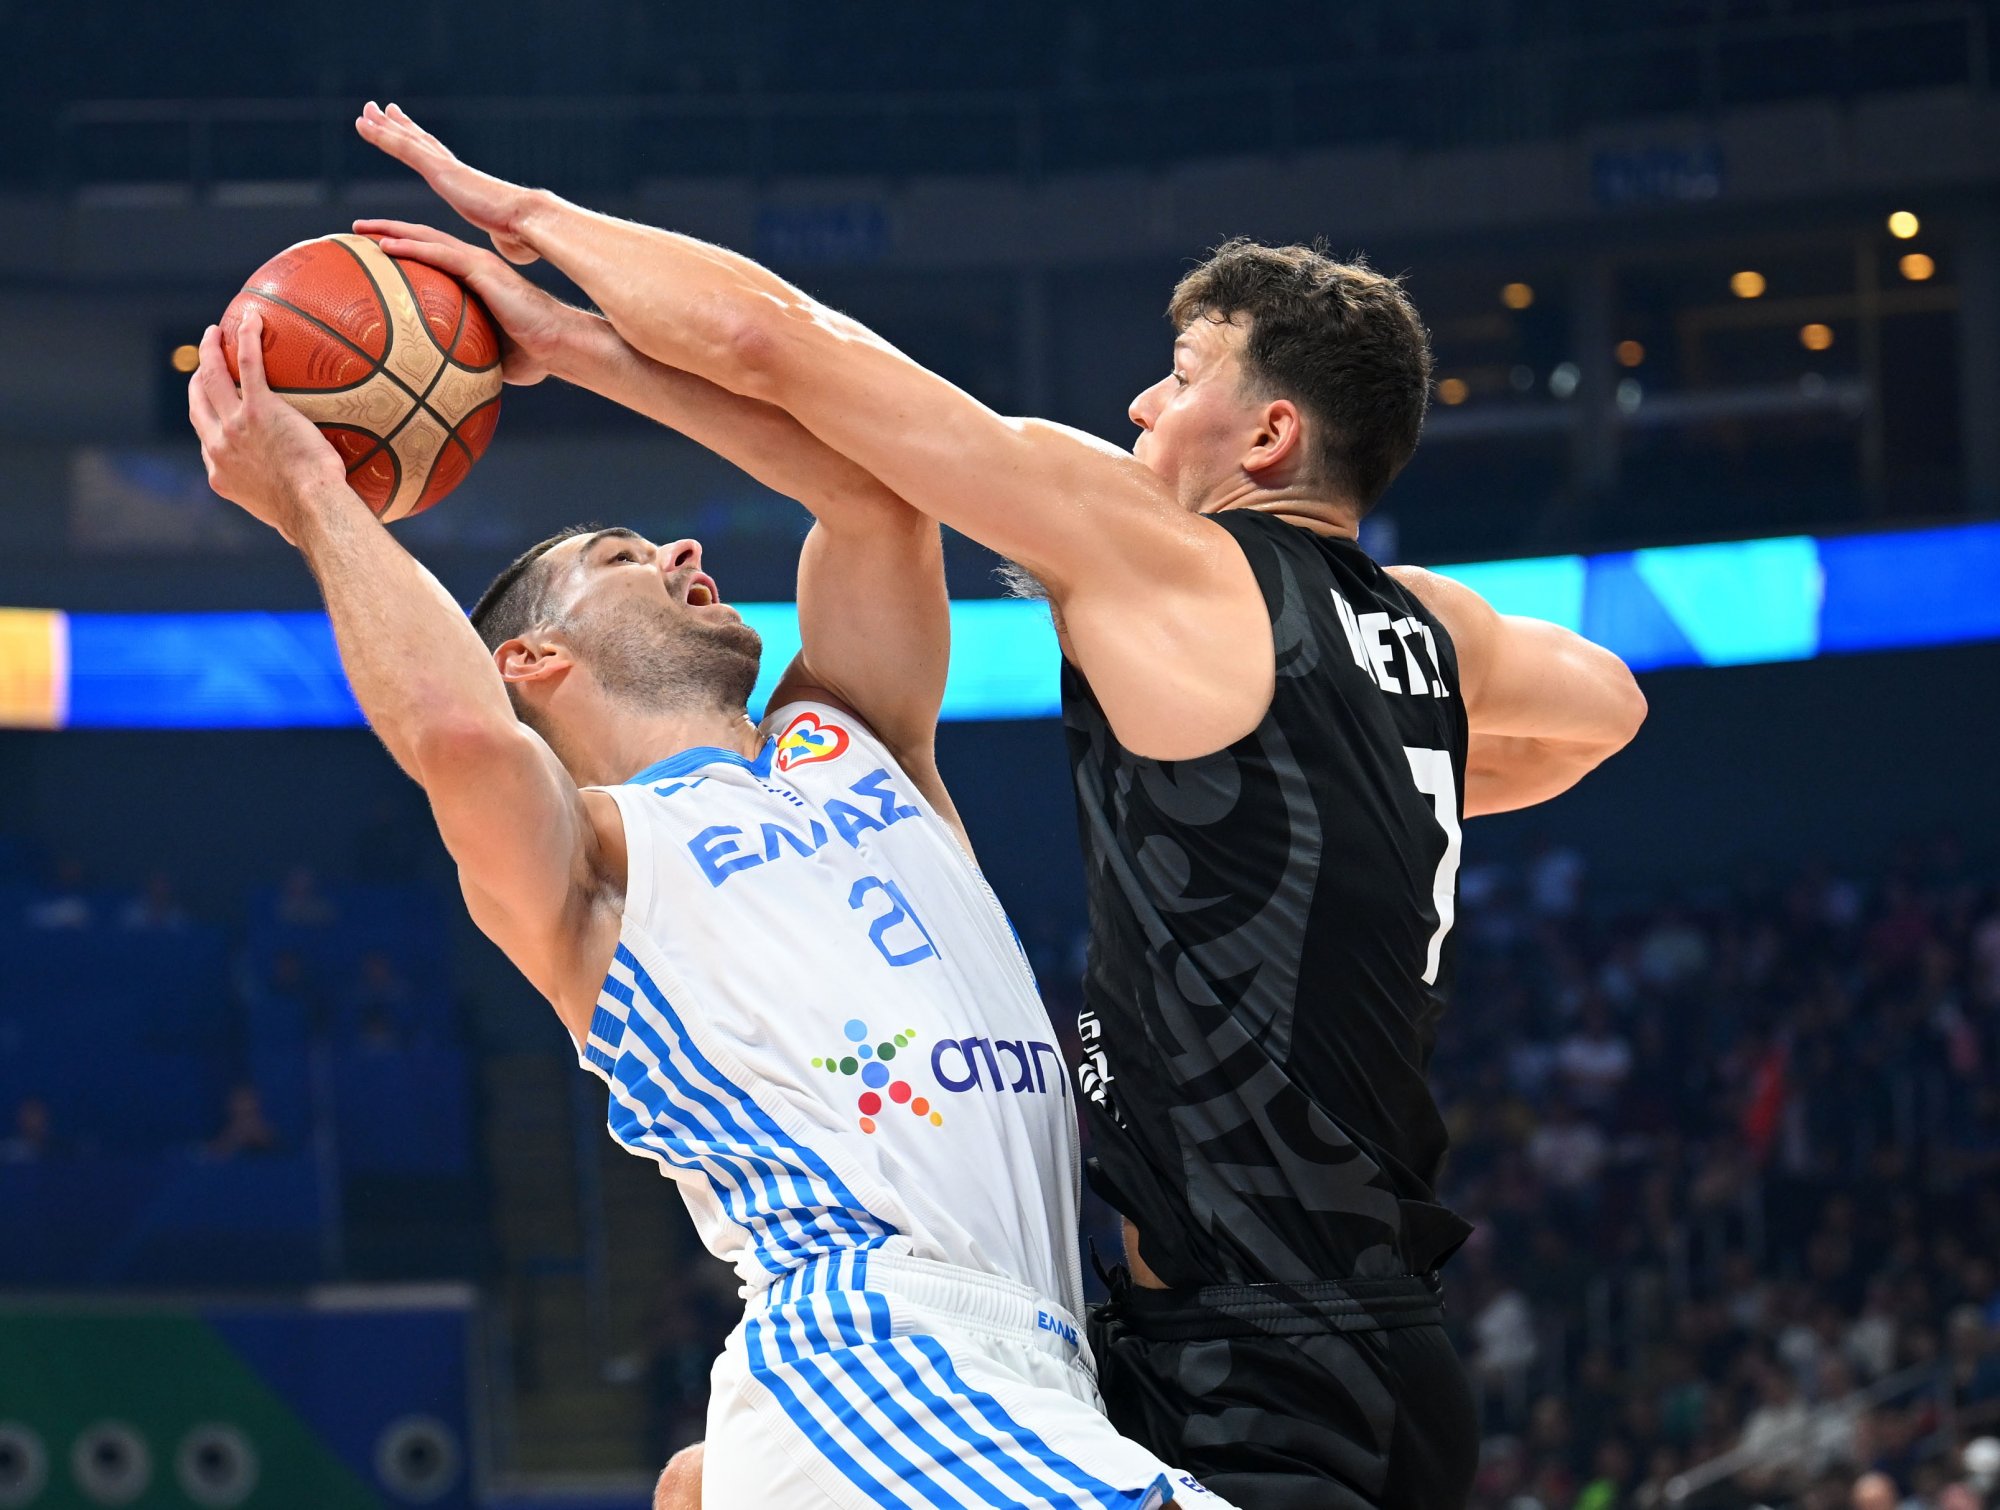 Ελλάδα – Νέα Ζηλανδία 83-74: Πρόκριση στους 16 του Mundobasket με ανατροπή από τα παλιά